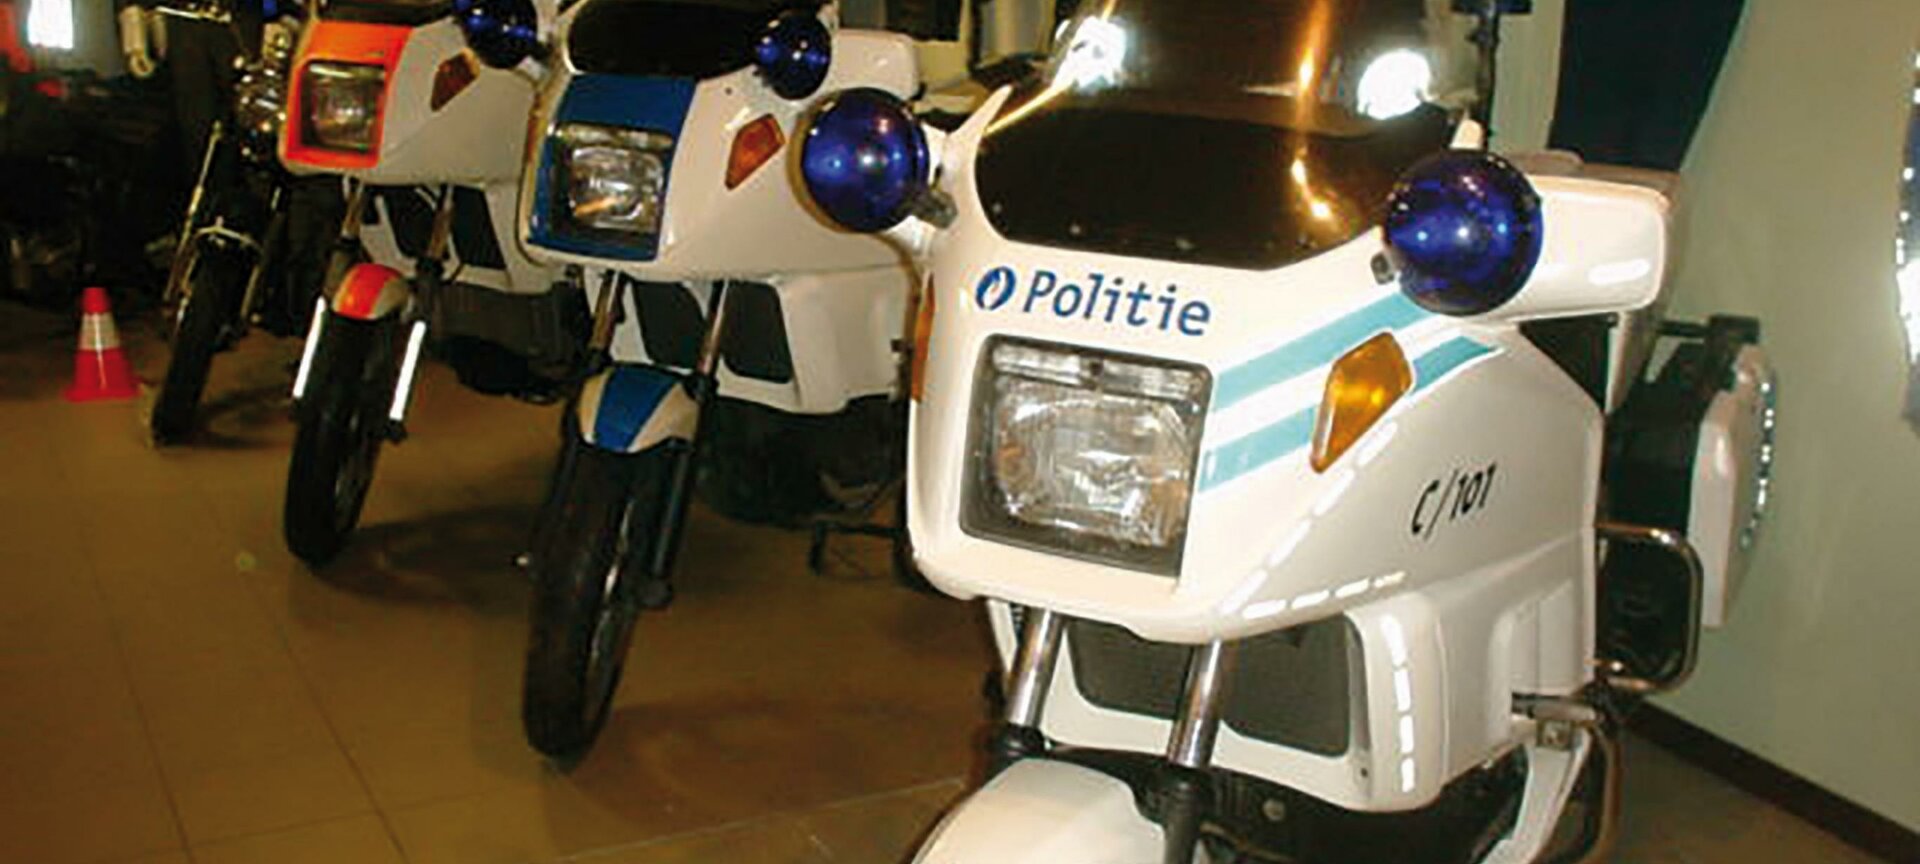 Politie- en Motormuseum - Politie- en rijkswachtmuseum